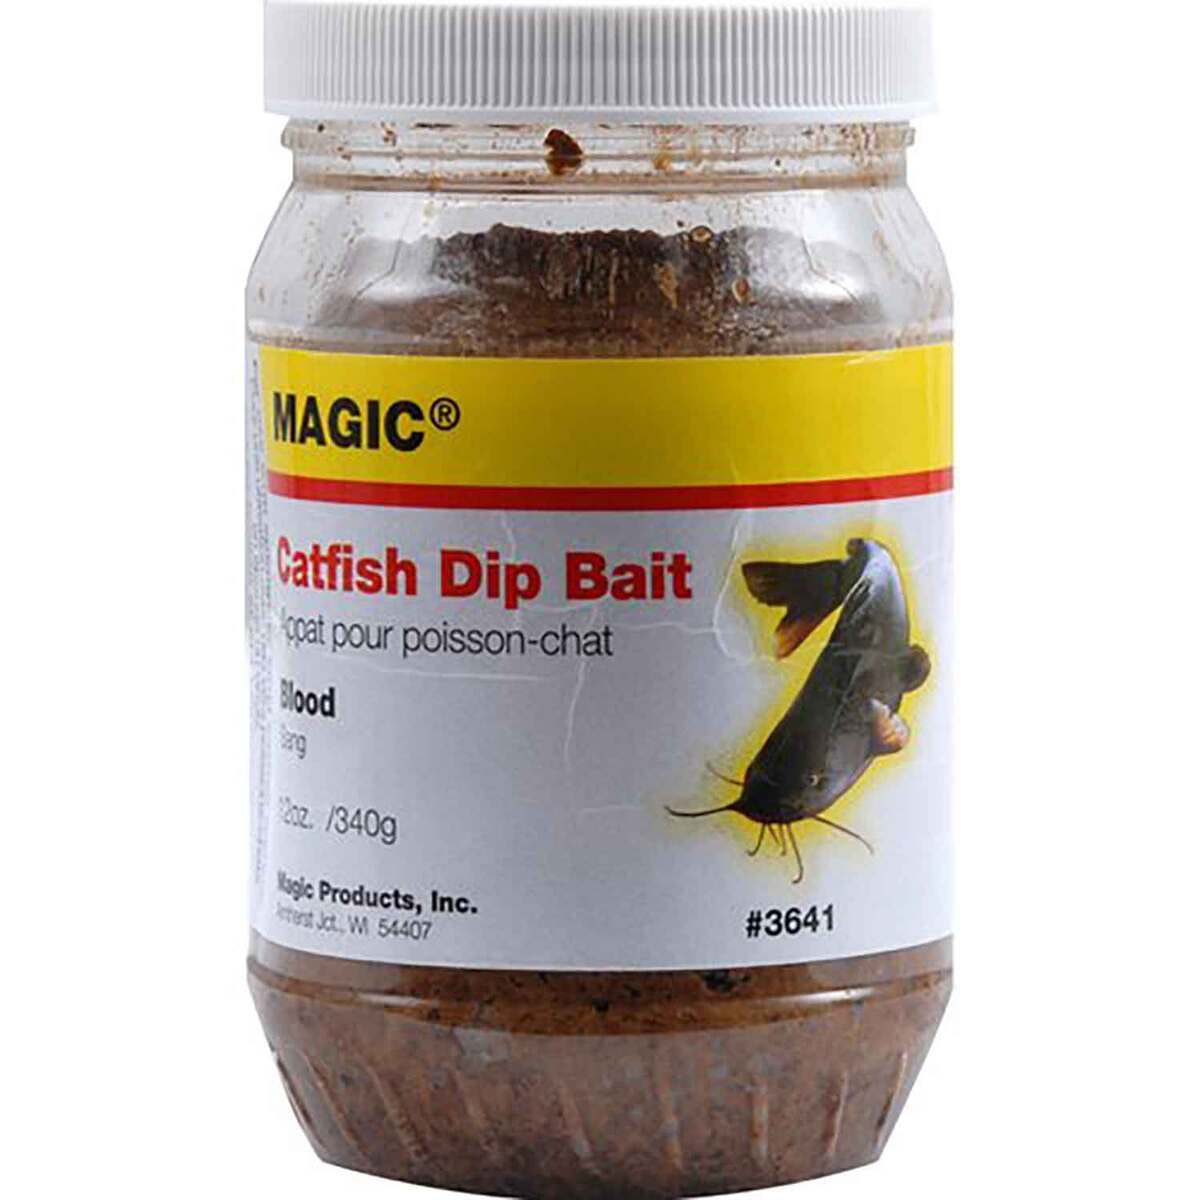 Magic Catfish Dip Bait